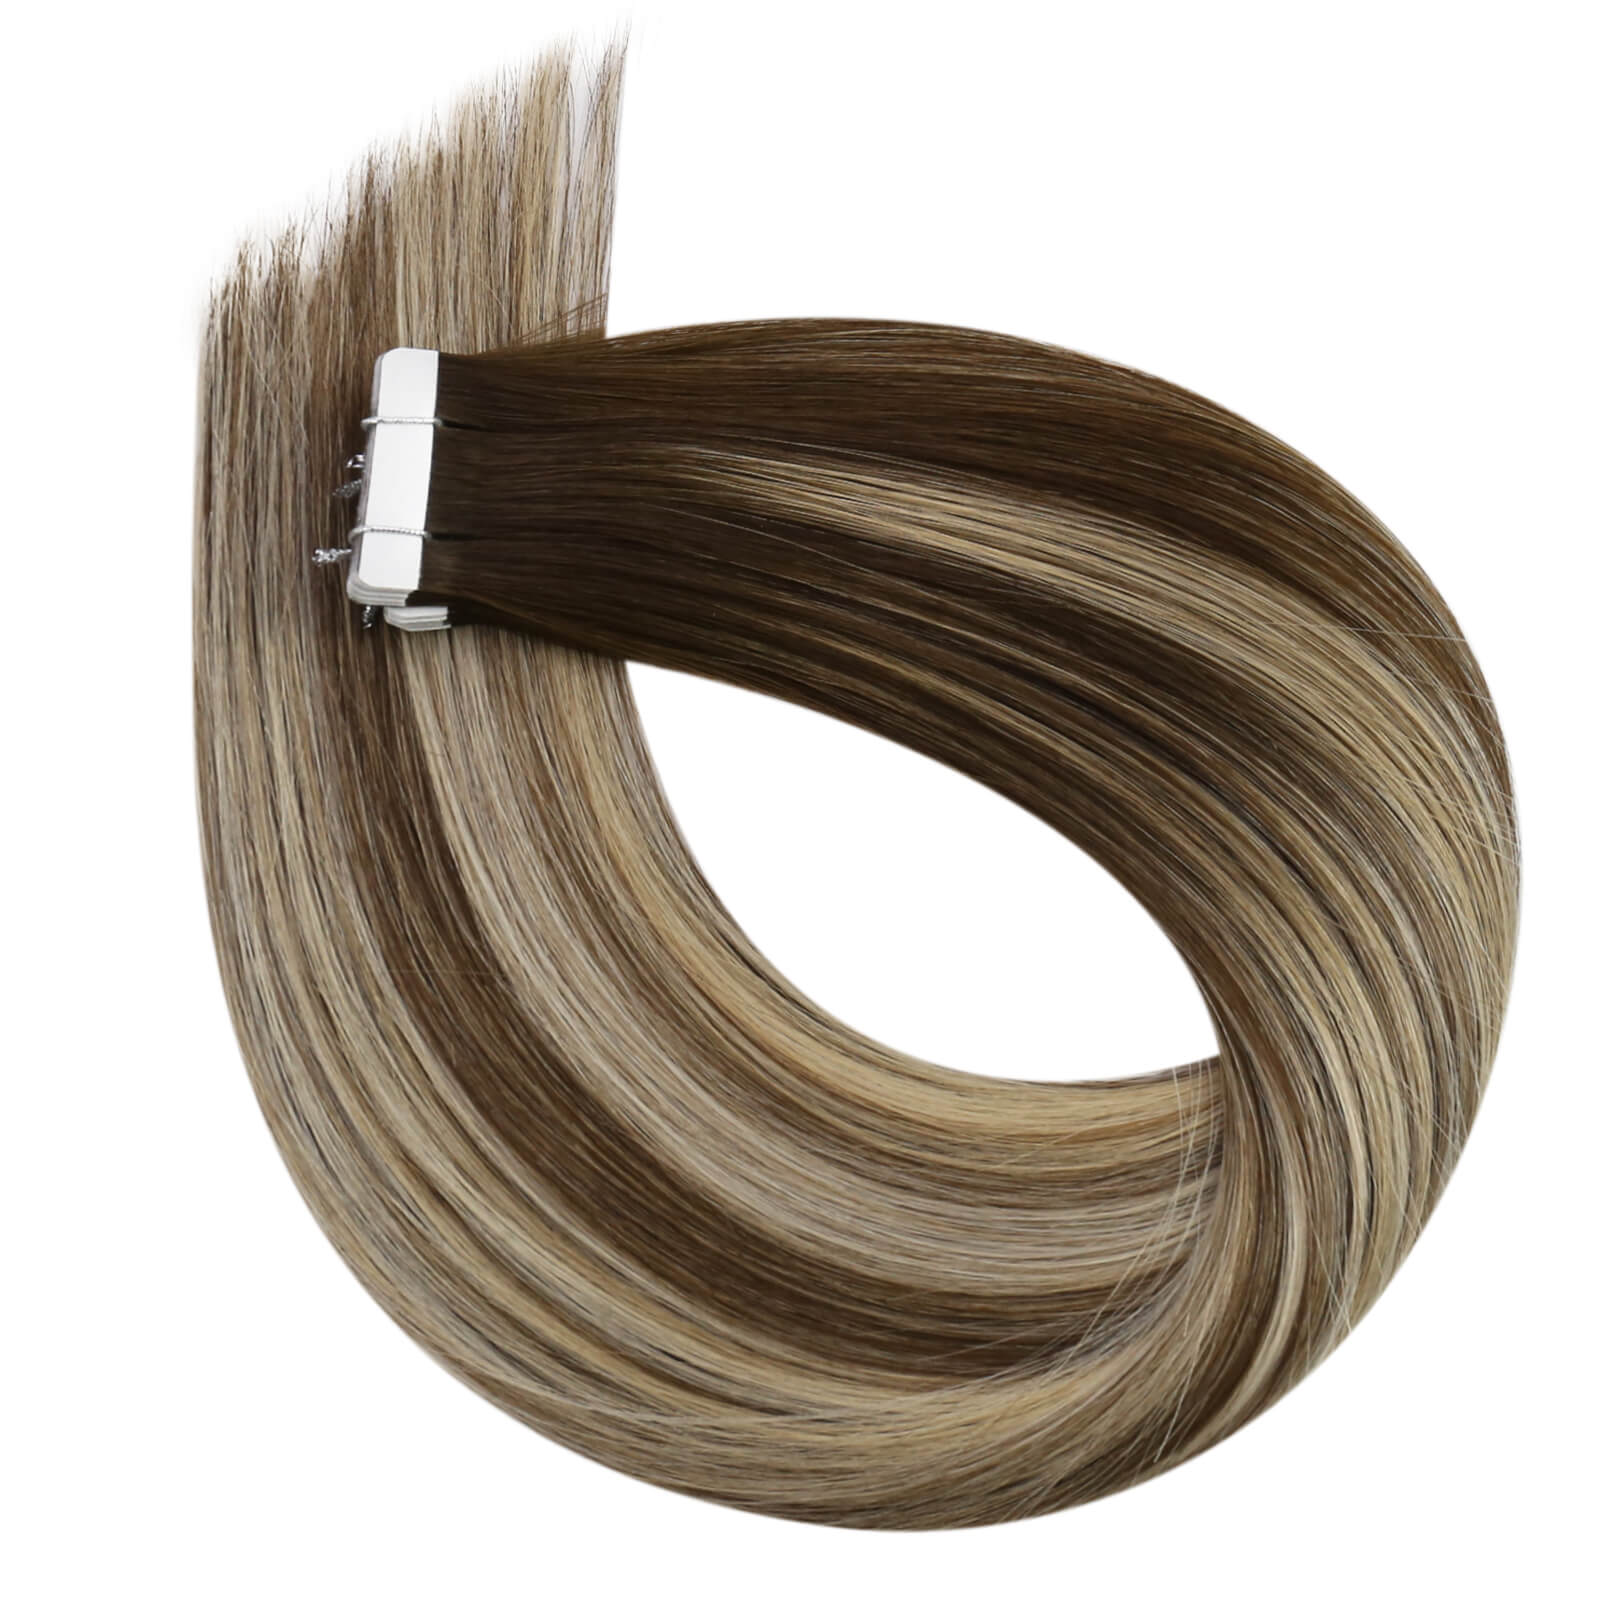 16 inch hair extensions 22 inch hair extensions tape ins tape ins extensions tape ins hair extensions